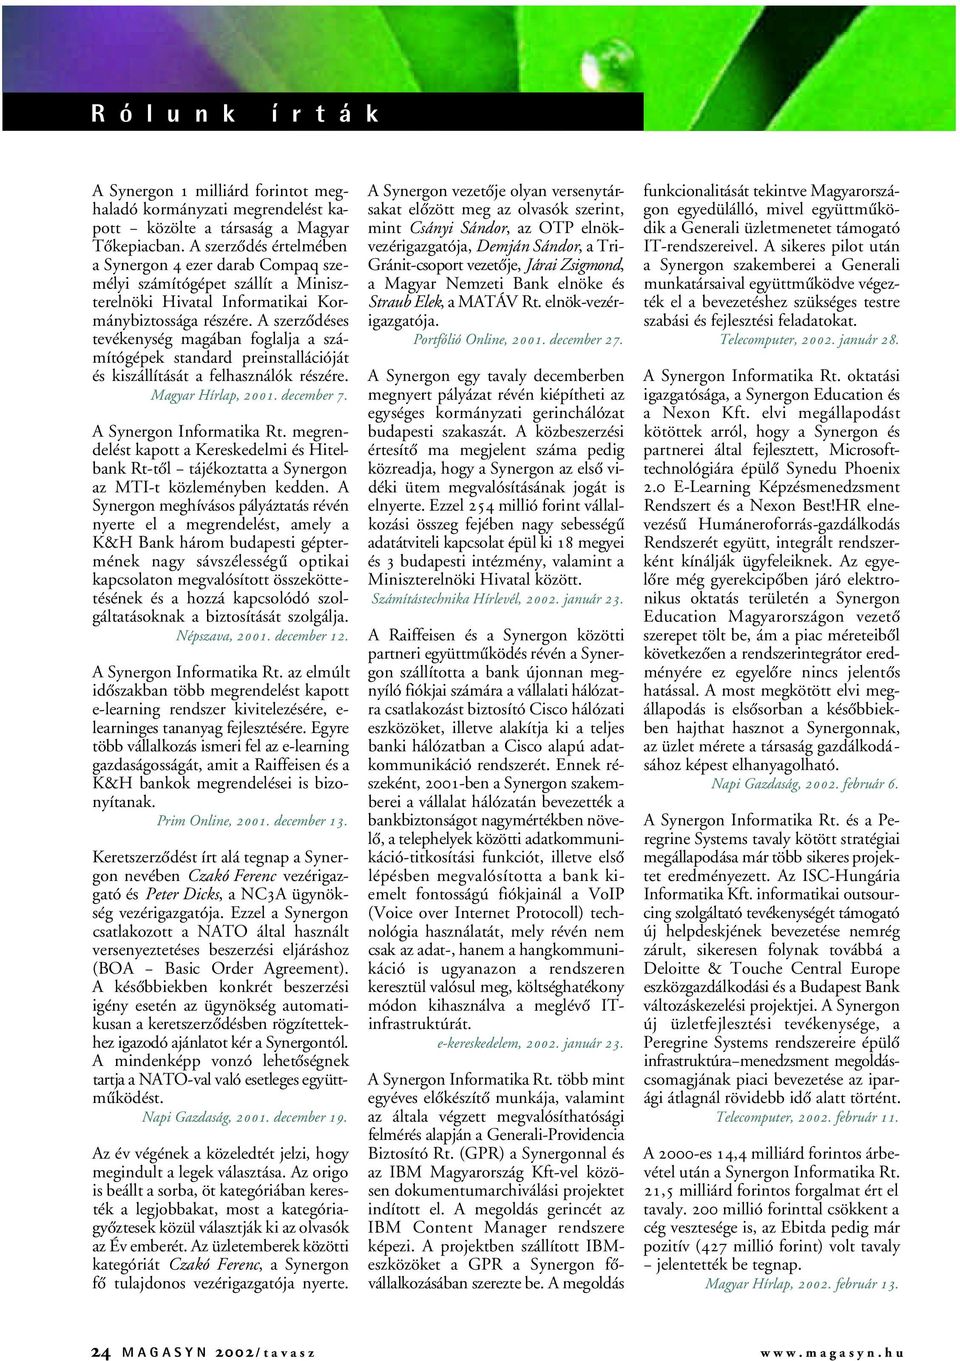 A szerzôdéses tevékenység magában foglalja a számítógépek standard preinstallációját és kiszállítását a felhasználók részére. Magyar Hírlap, 2001. december 7. A Synergon Informatika Rt.